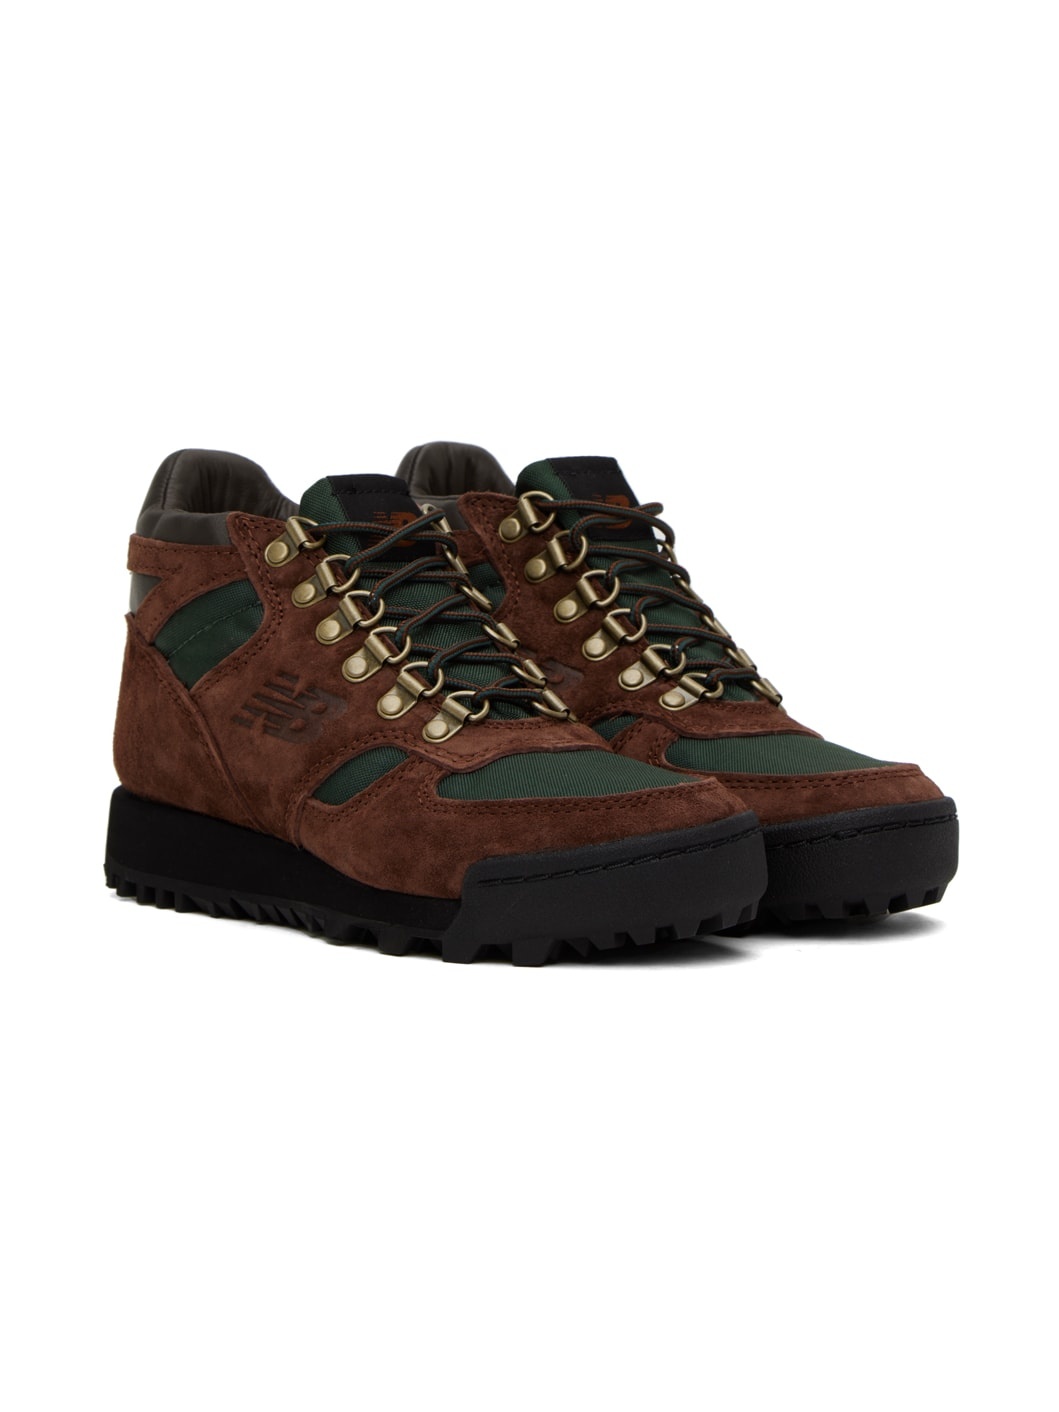 Brown & Green Rainier Boots - 4